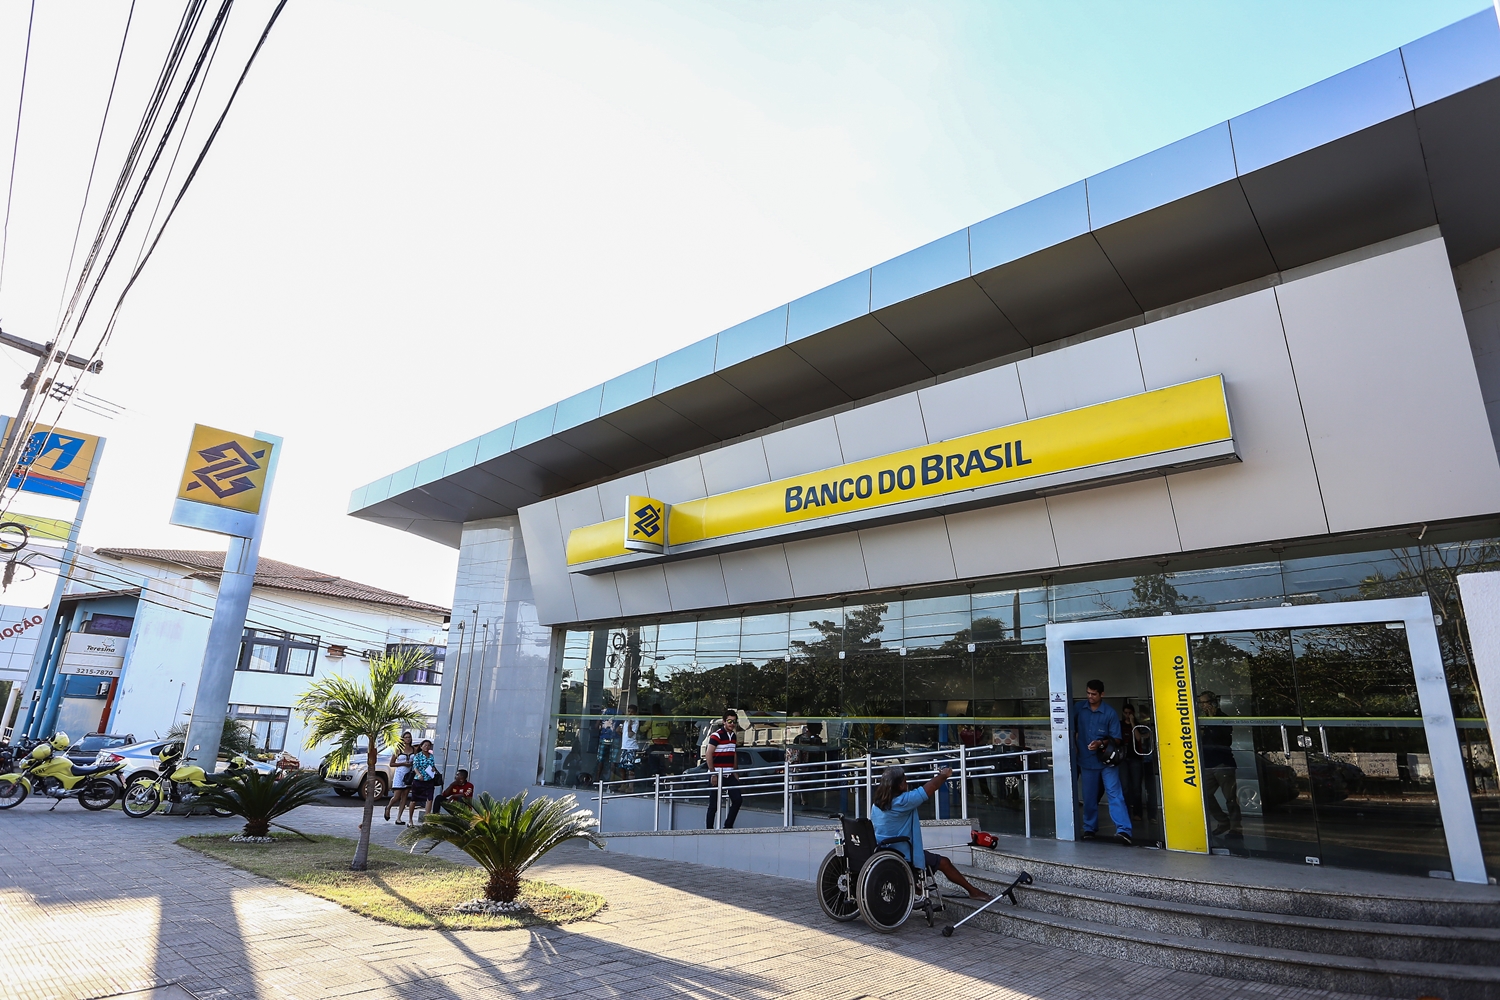 Banco do Brasil 